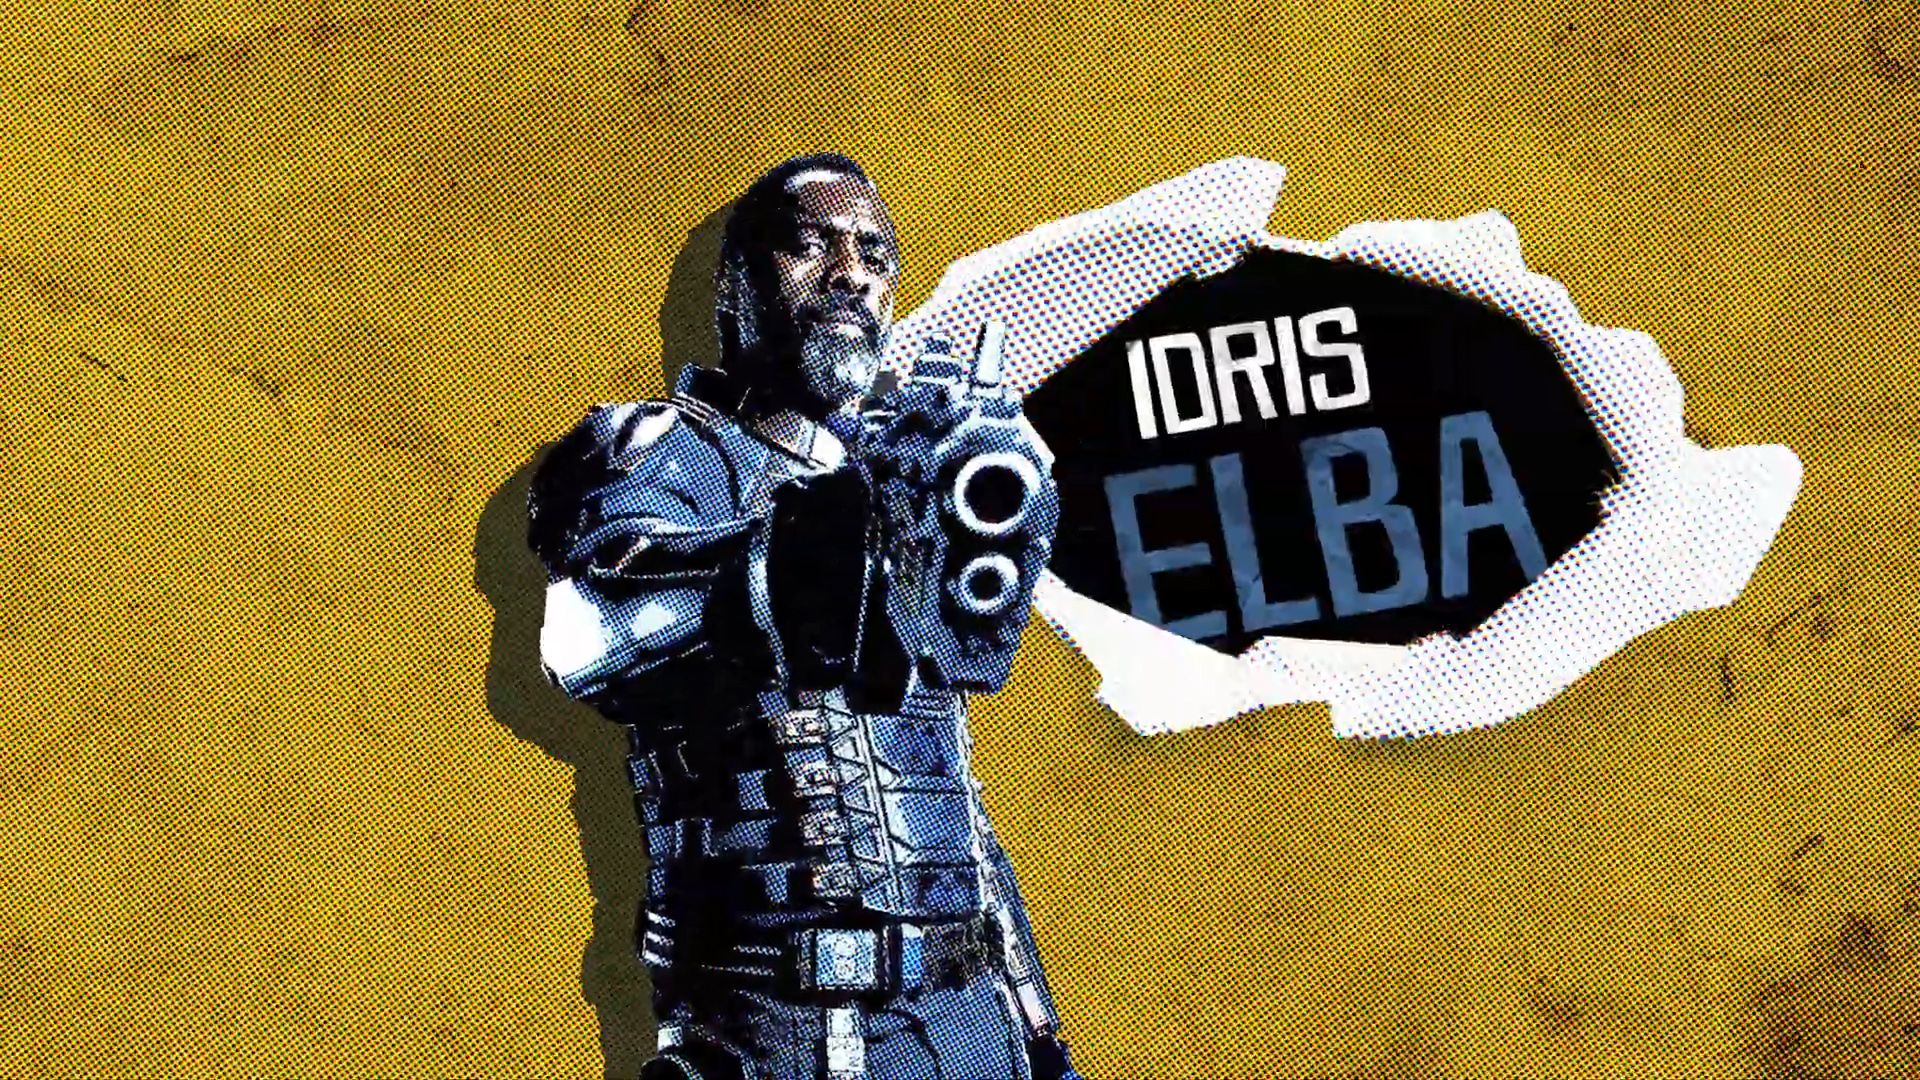 The Suicide Squad Cast Image Reveal Idris Elba, Pete Davidson